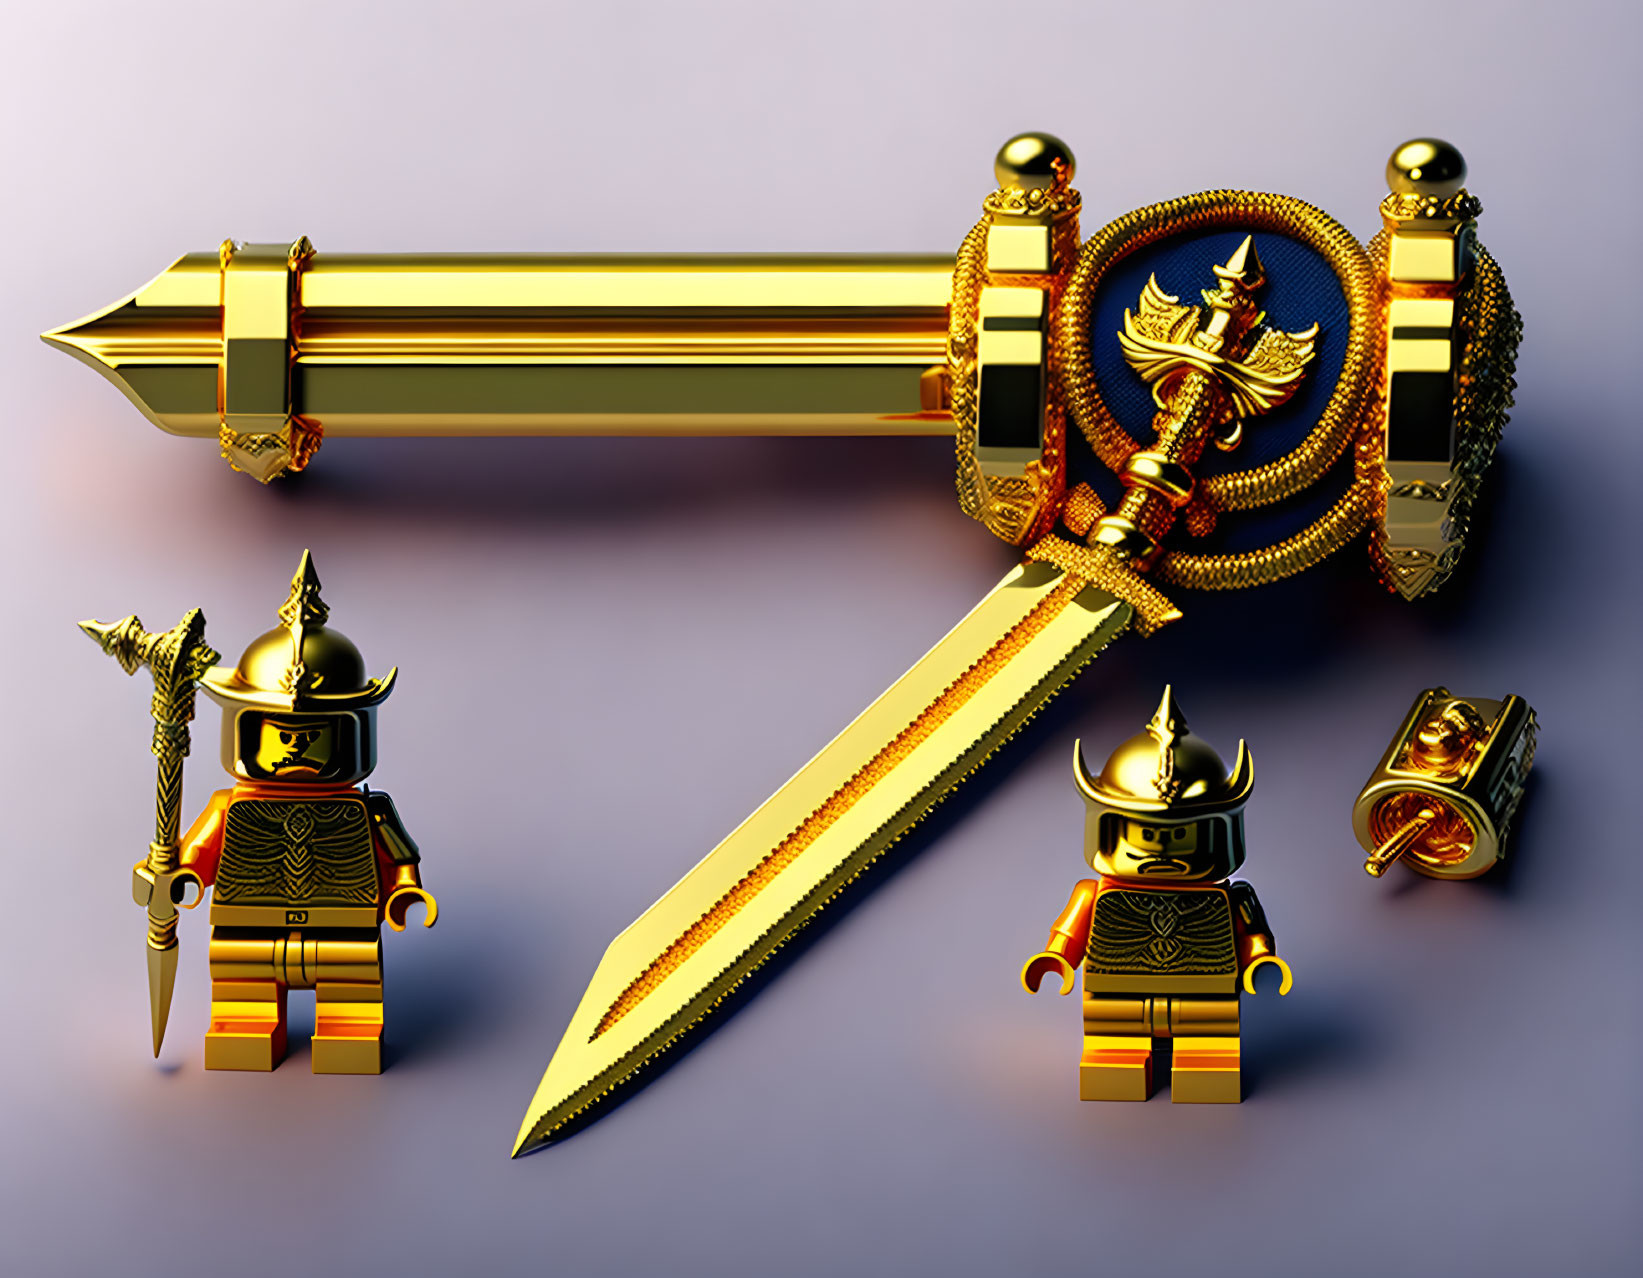 Lego golden sword